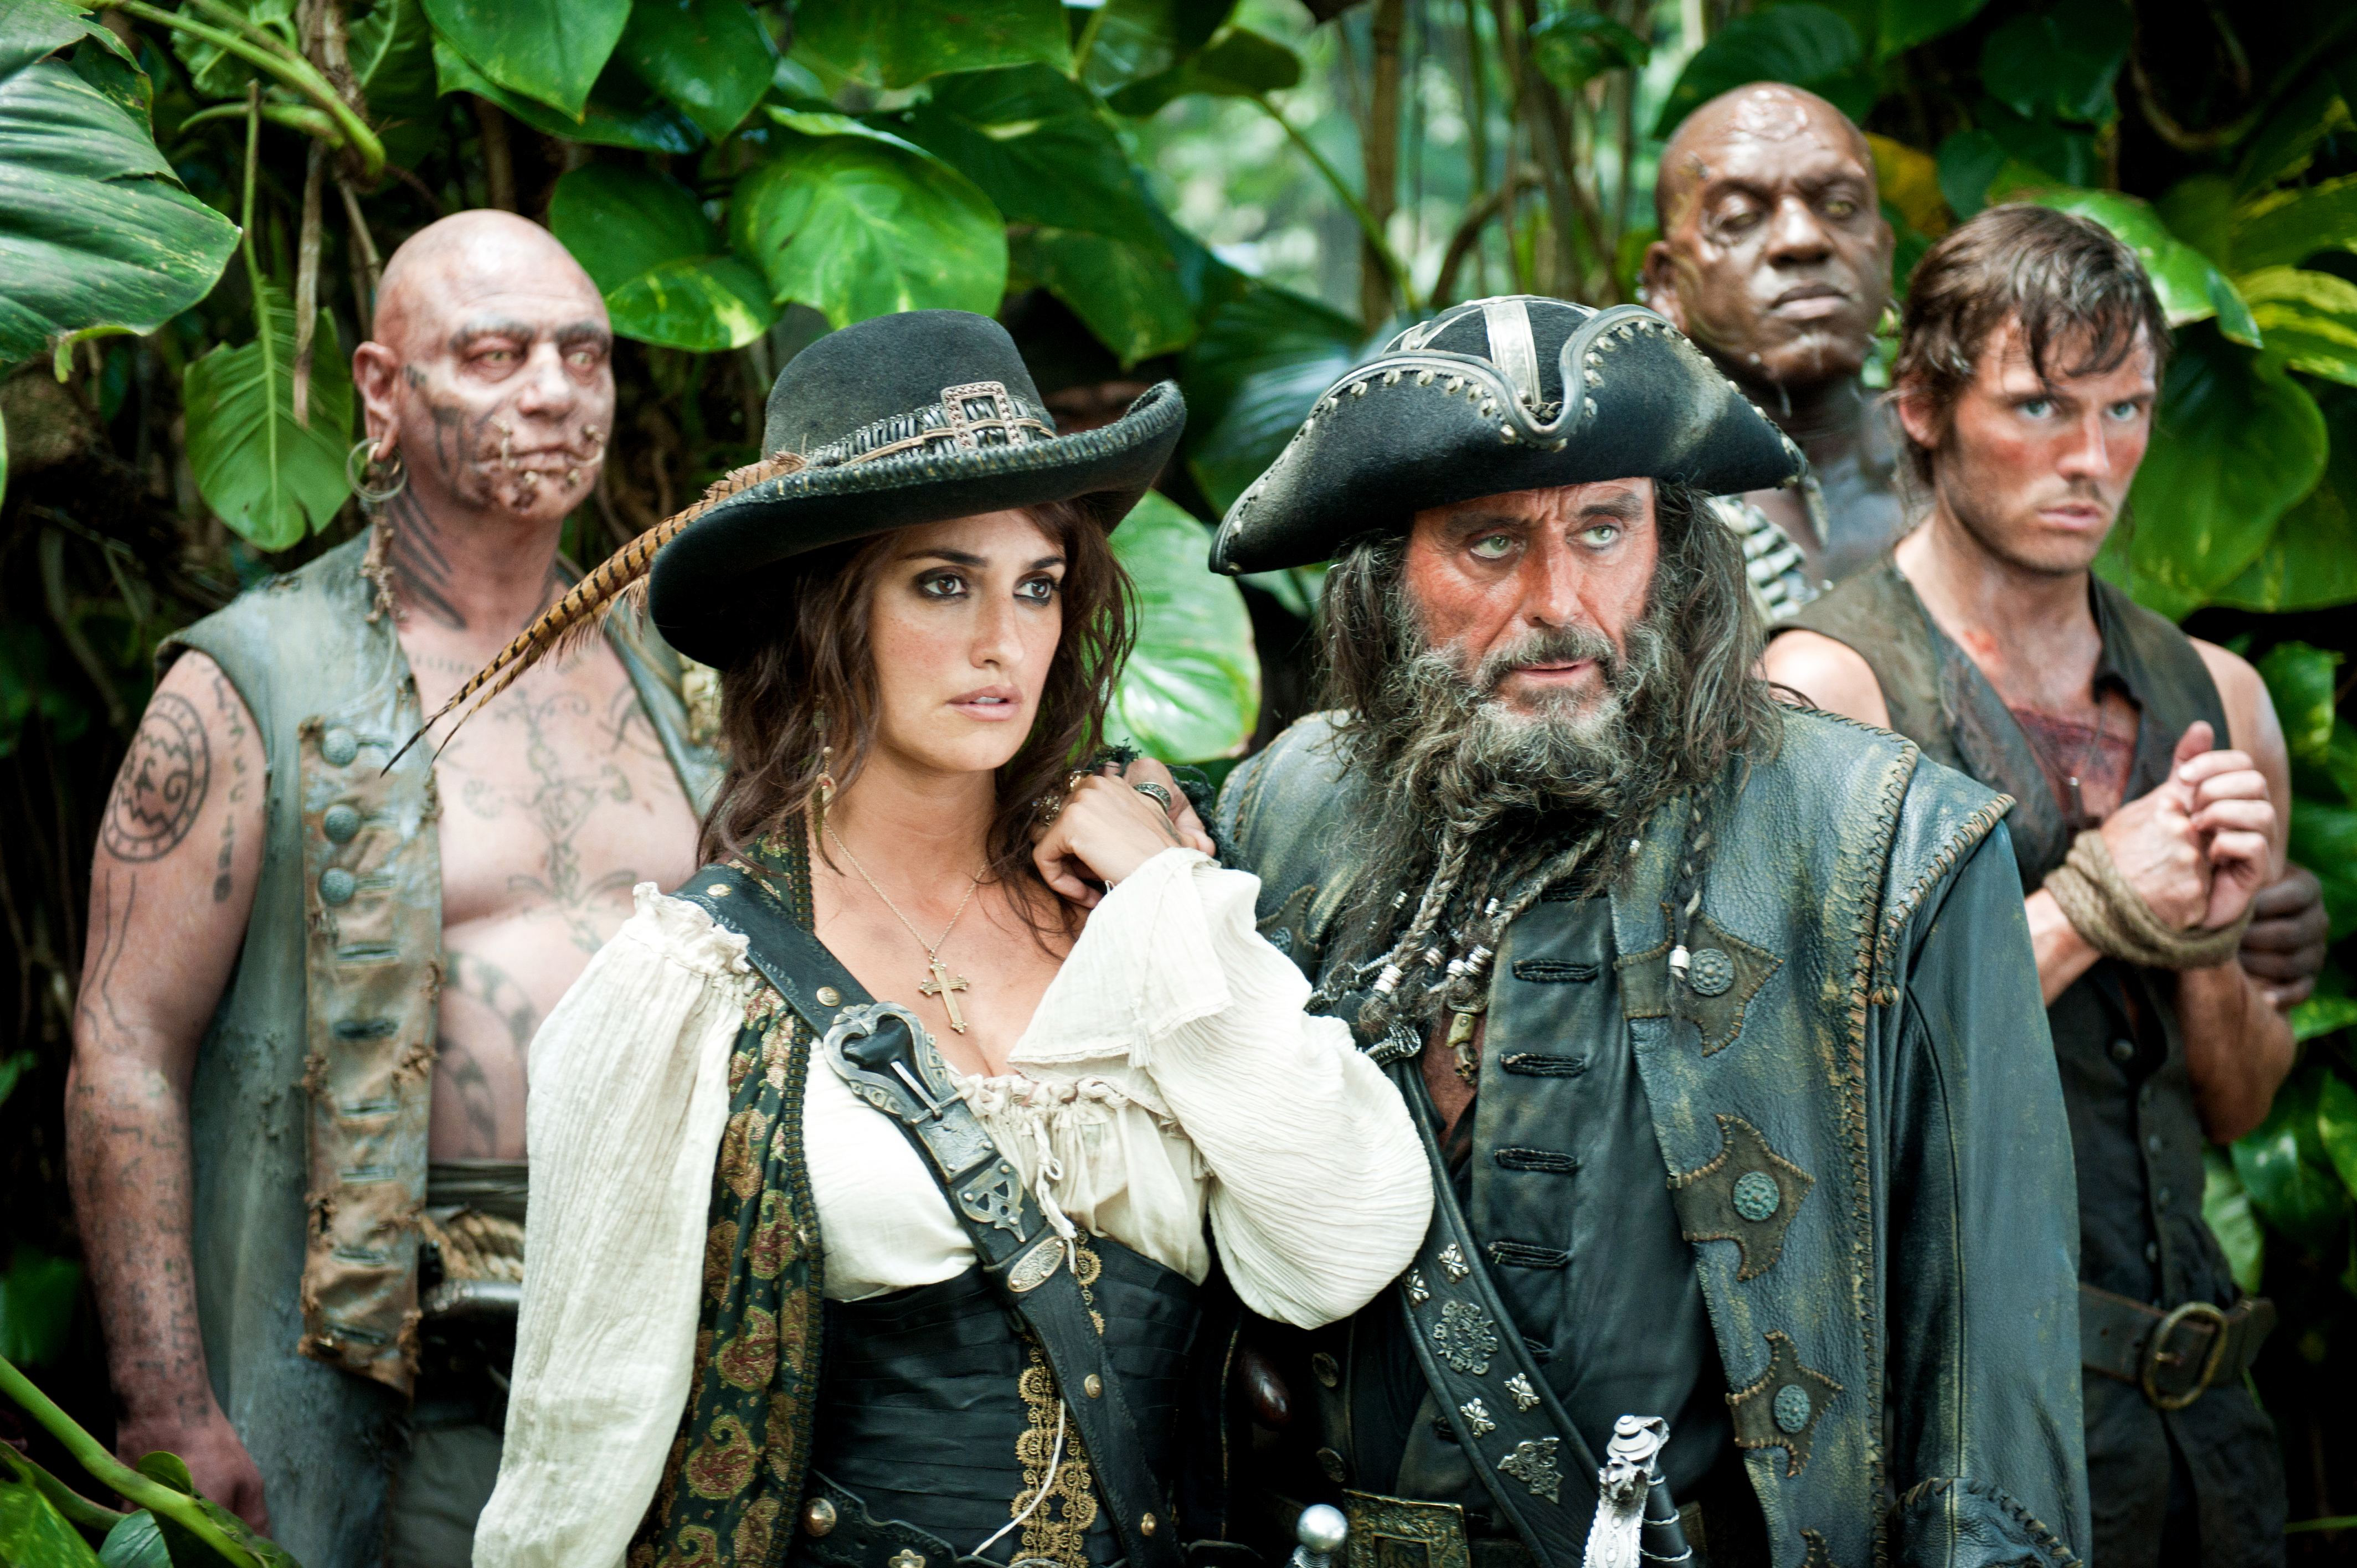 Пираты карибского моря главные роли